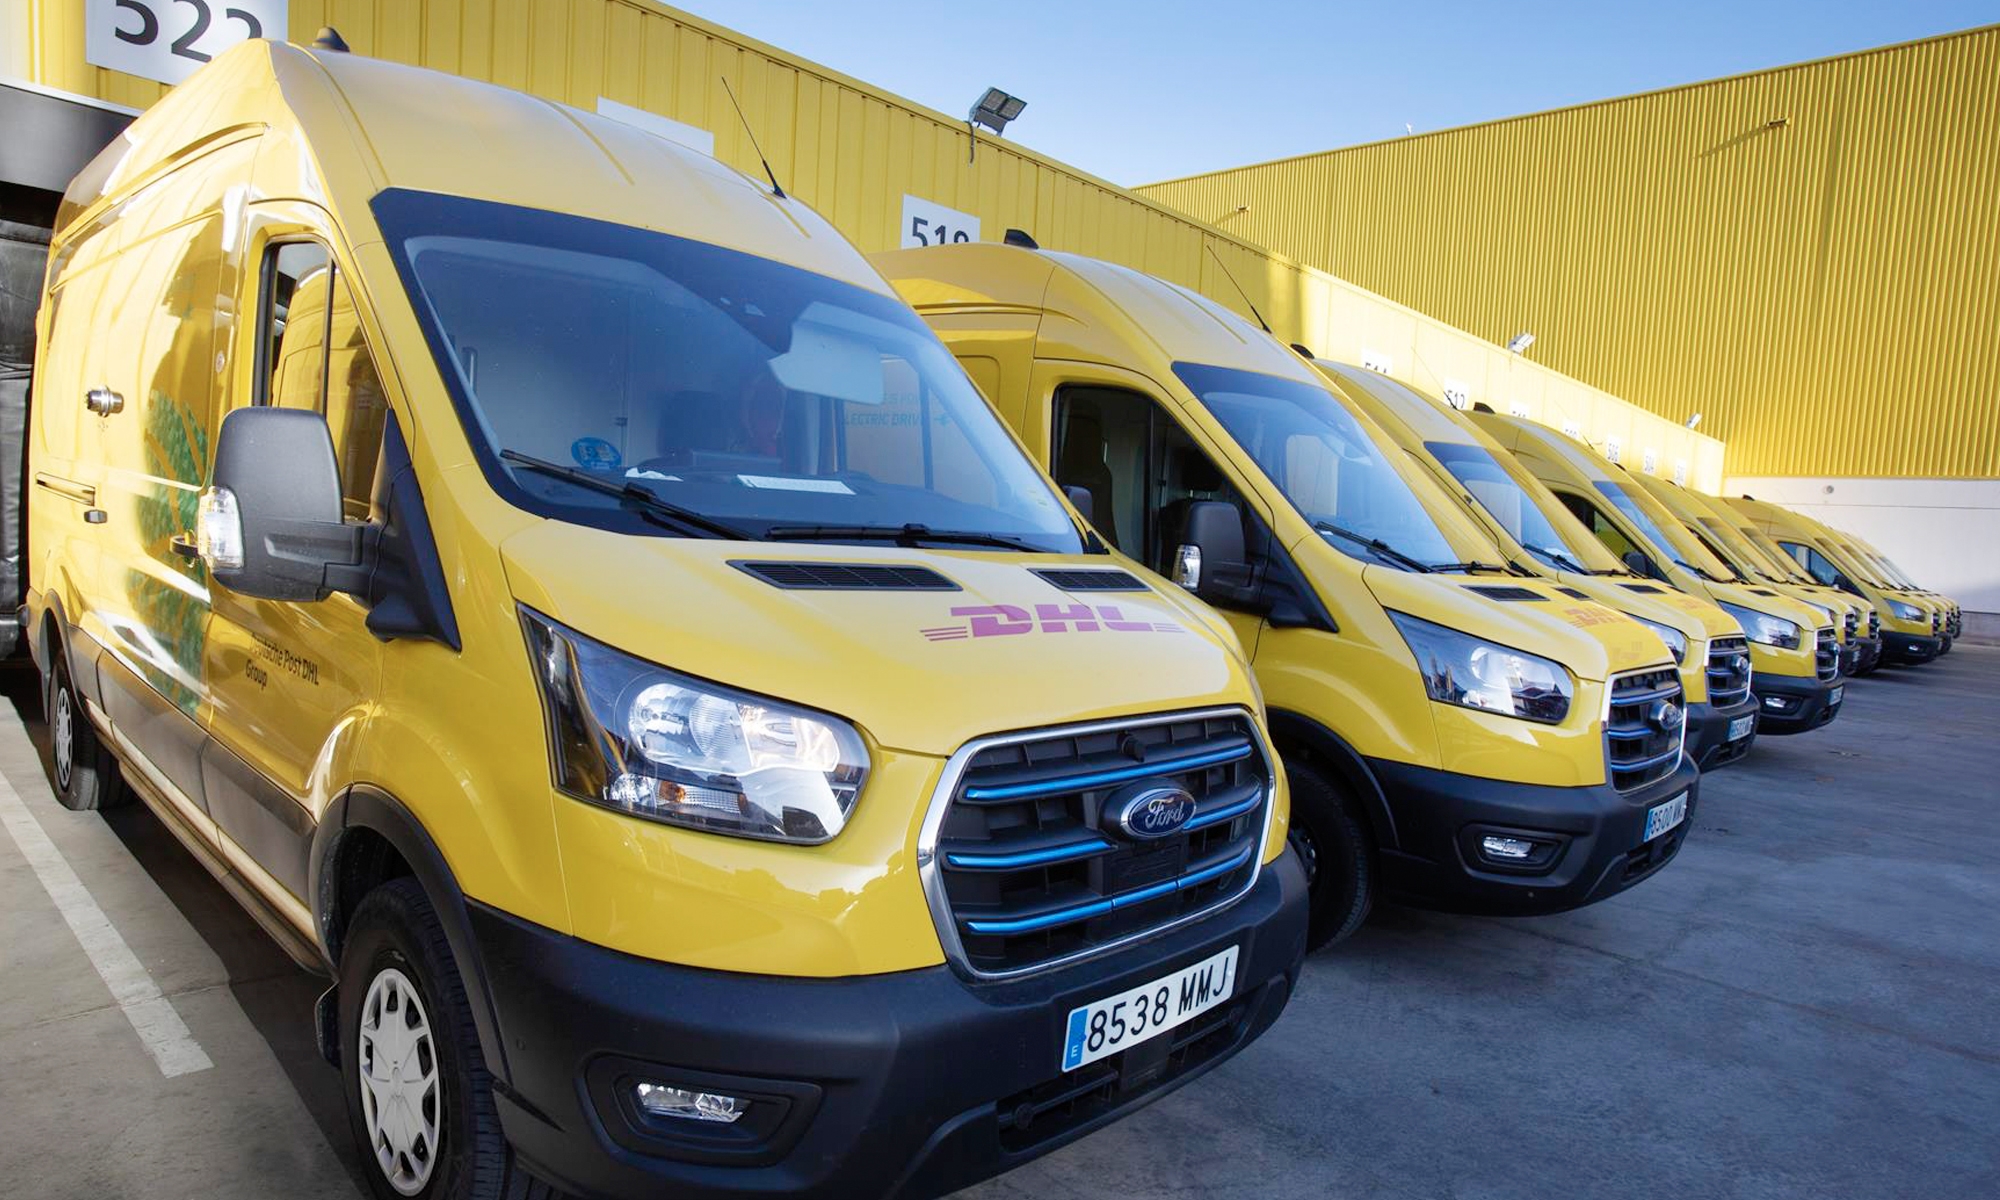 DHL incorpora furgonetas Ford E-Transit para entregas de última milla en España